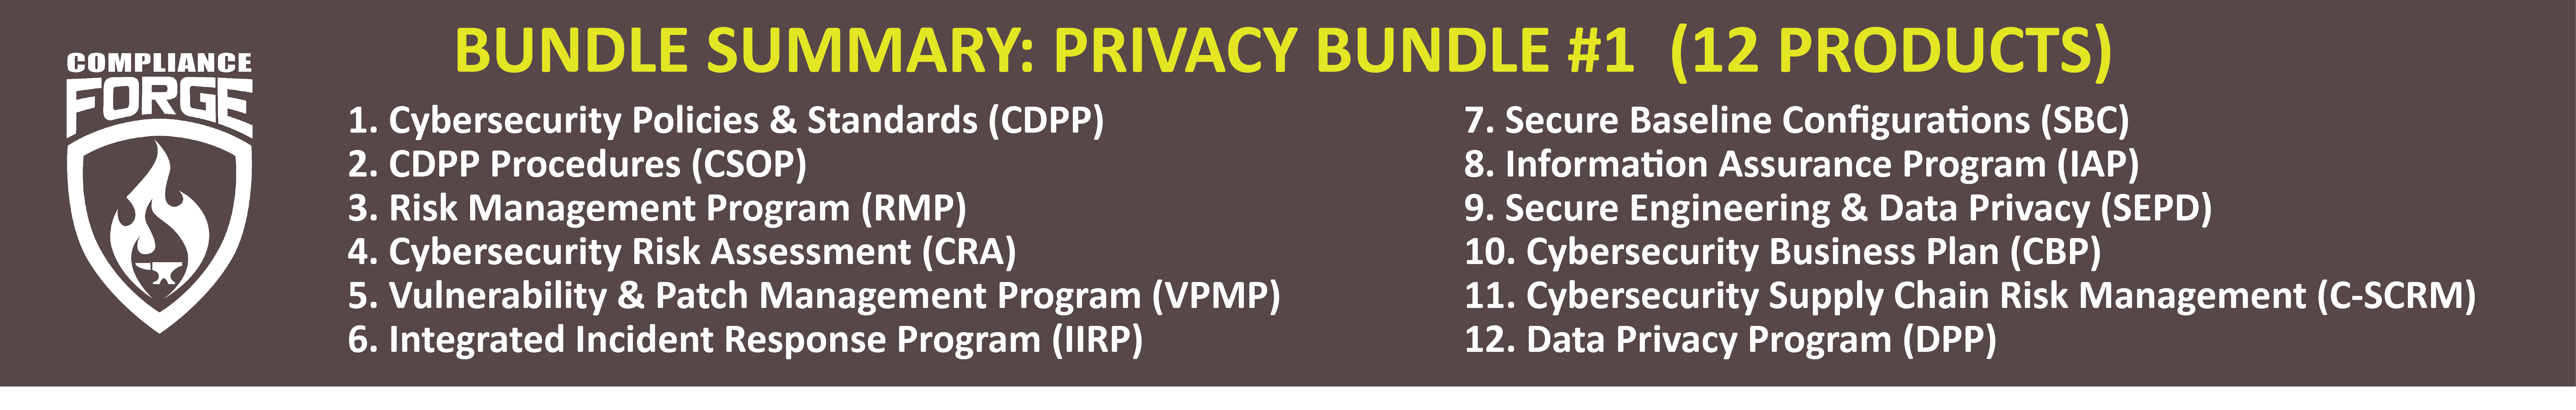 privacy bundle 1